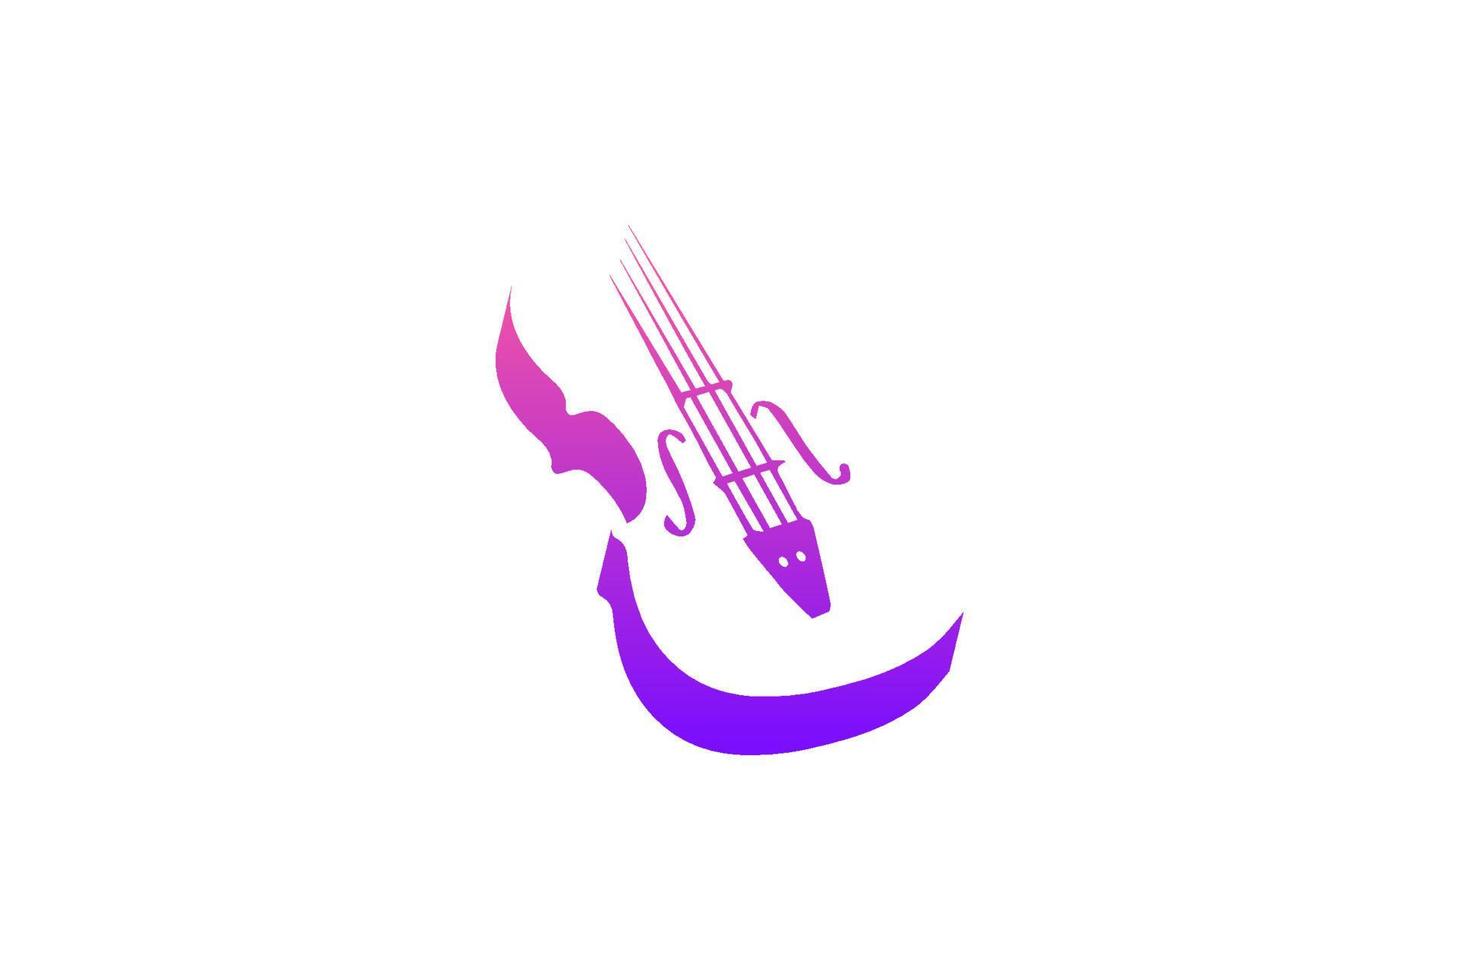 silueta de violín moderna simple para el vector de diseño del logotipo de la competencia de conciertos de música